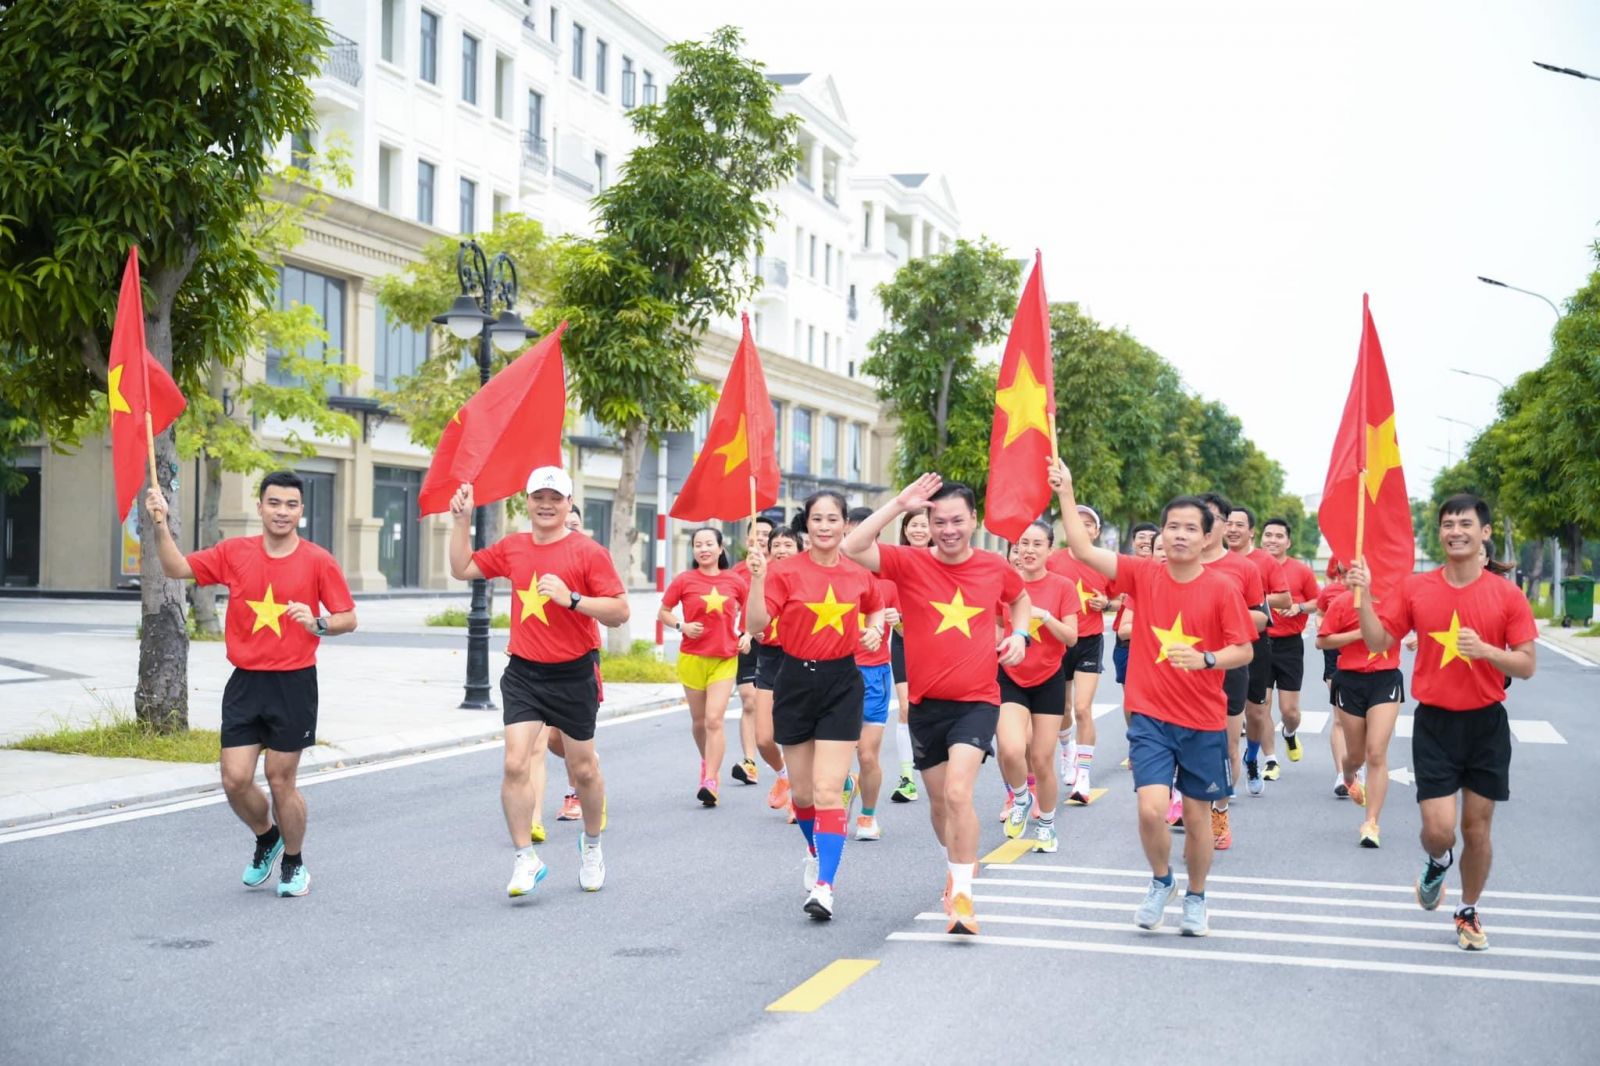 Giải chạy chào mừng Quốc khánh 2/9/2023 được tổ chức tại Ocean City với sự tham gia của hàng chục cư dân với đồng phục cờ đỏ sao vàng. Ảnh: Nguyễn Thị Ánh Tuyết/Group Facebook Vinhomes Ocean Park Runners.